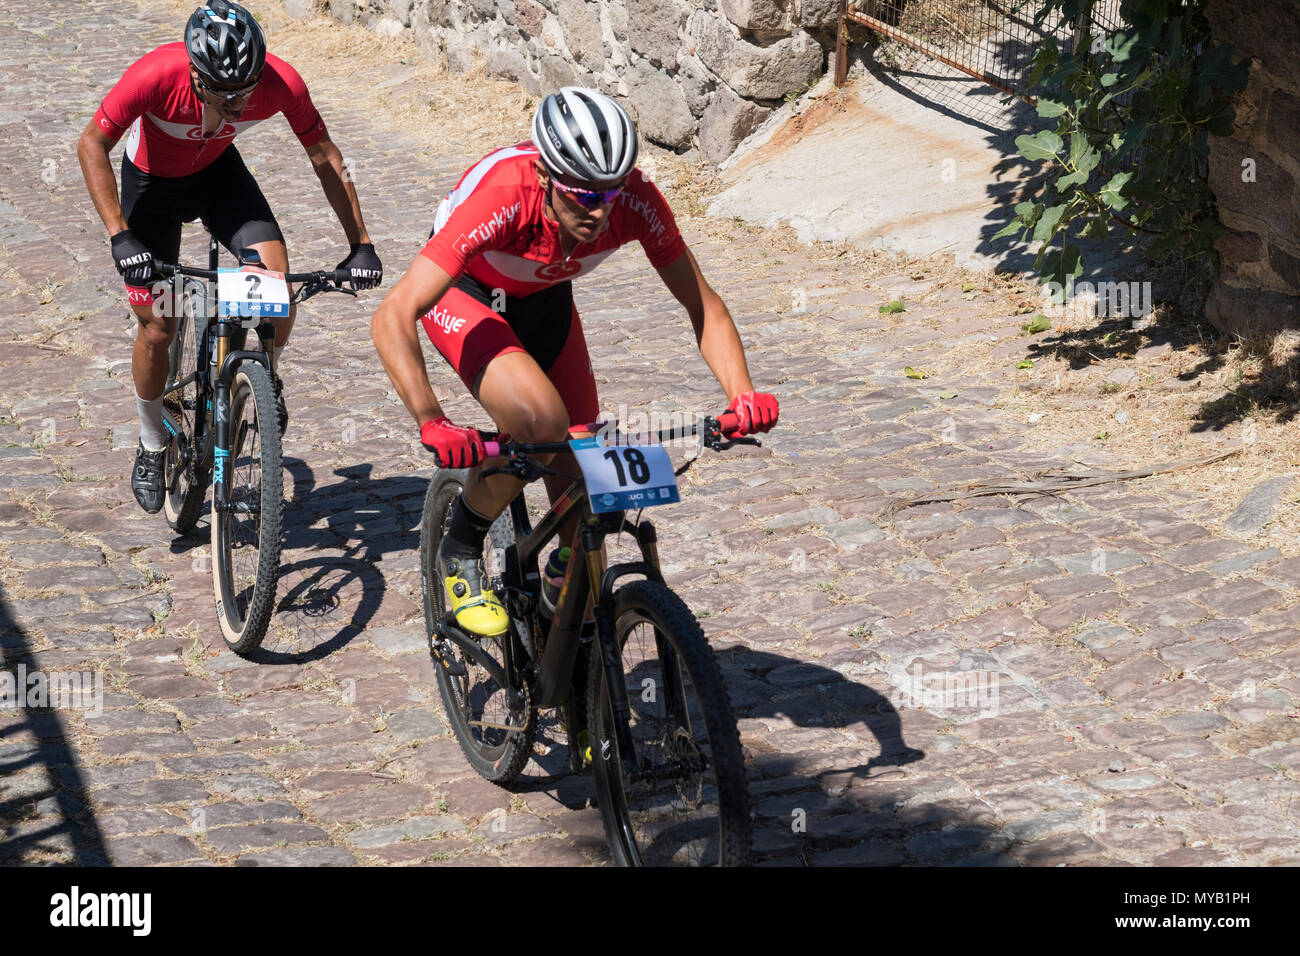 Les cyclistes masculins turc rivaliser sur la scène internationale, une course de VTT dans les rues du village grec de Molyvos sur l'île de Lesbos Banque D'Images